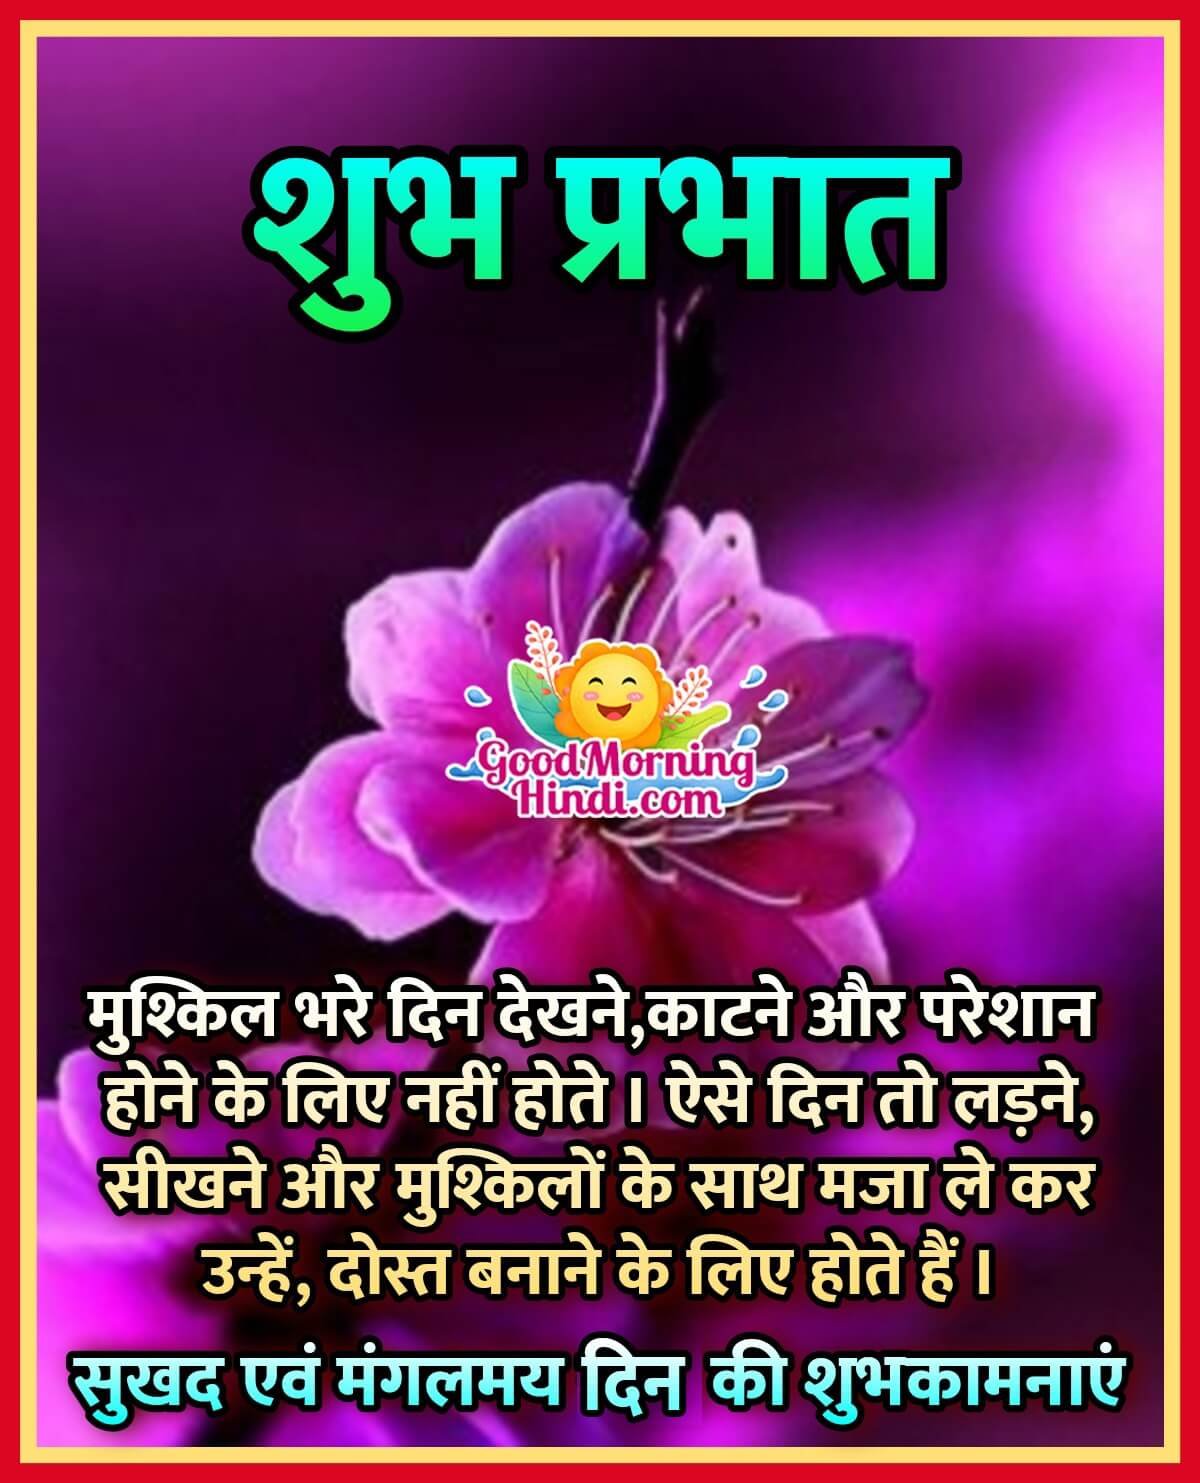 Good Morning Hindi Message Image